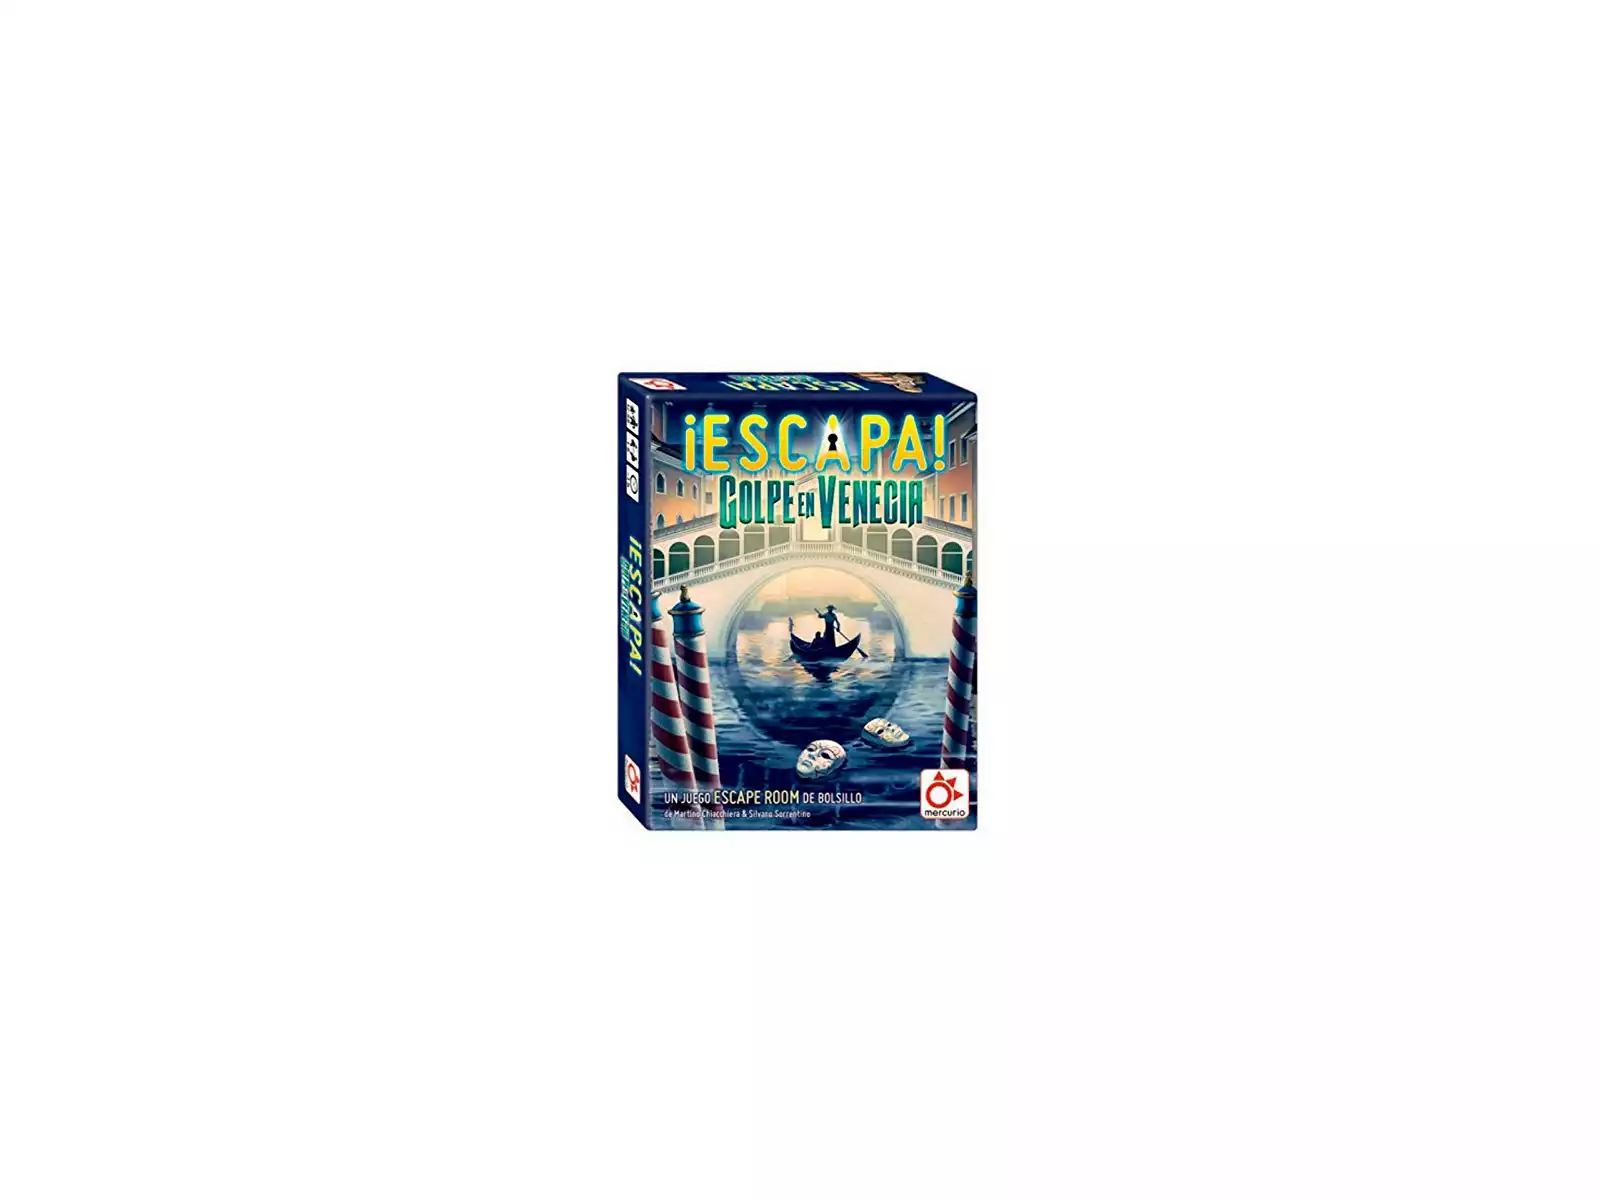 Escape! Fuga De Alcatraz Mercurio DV0008 - Juguetilandia